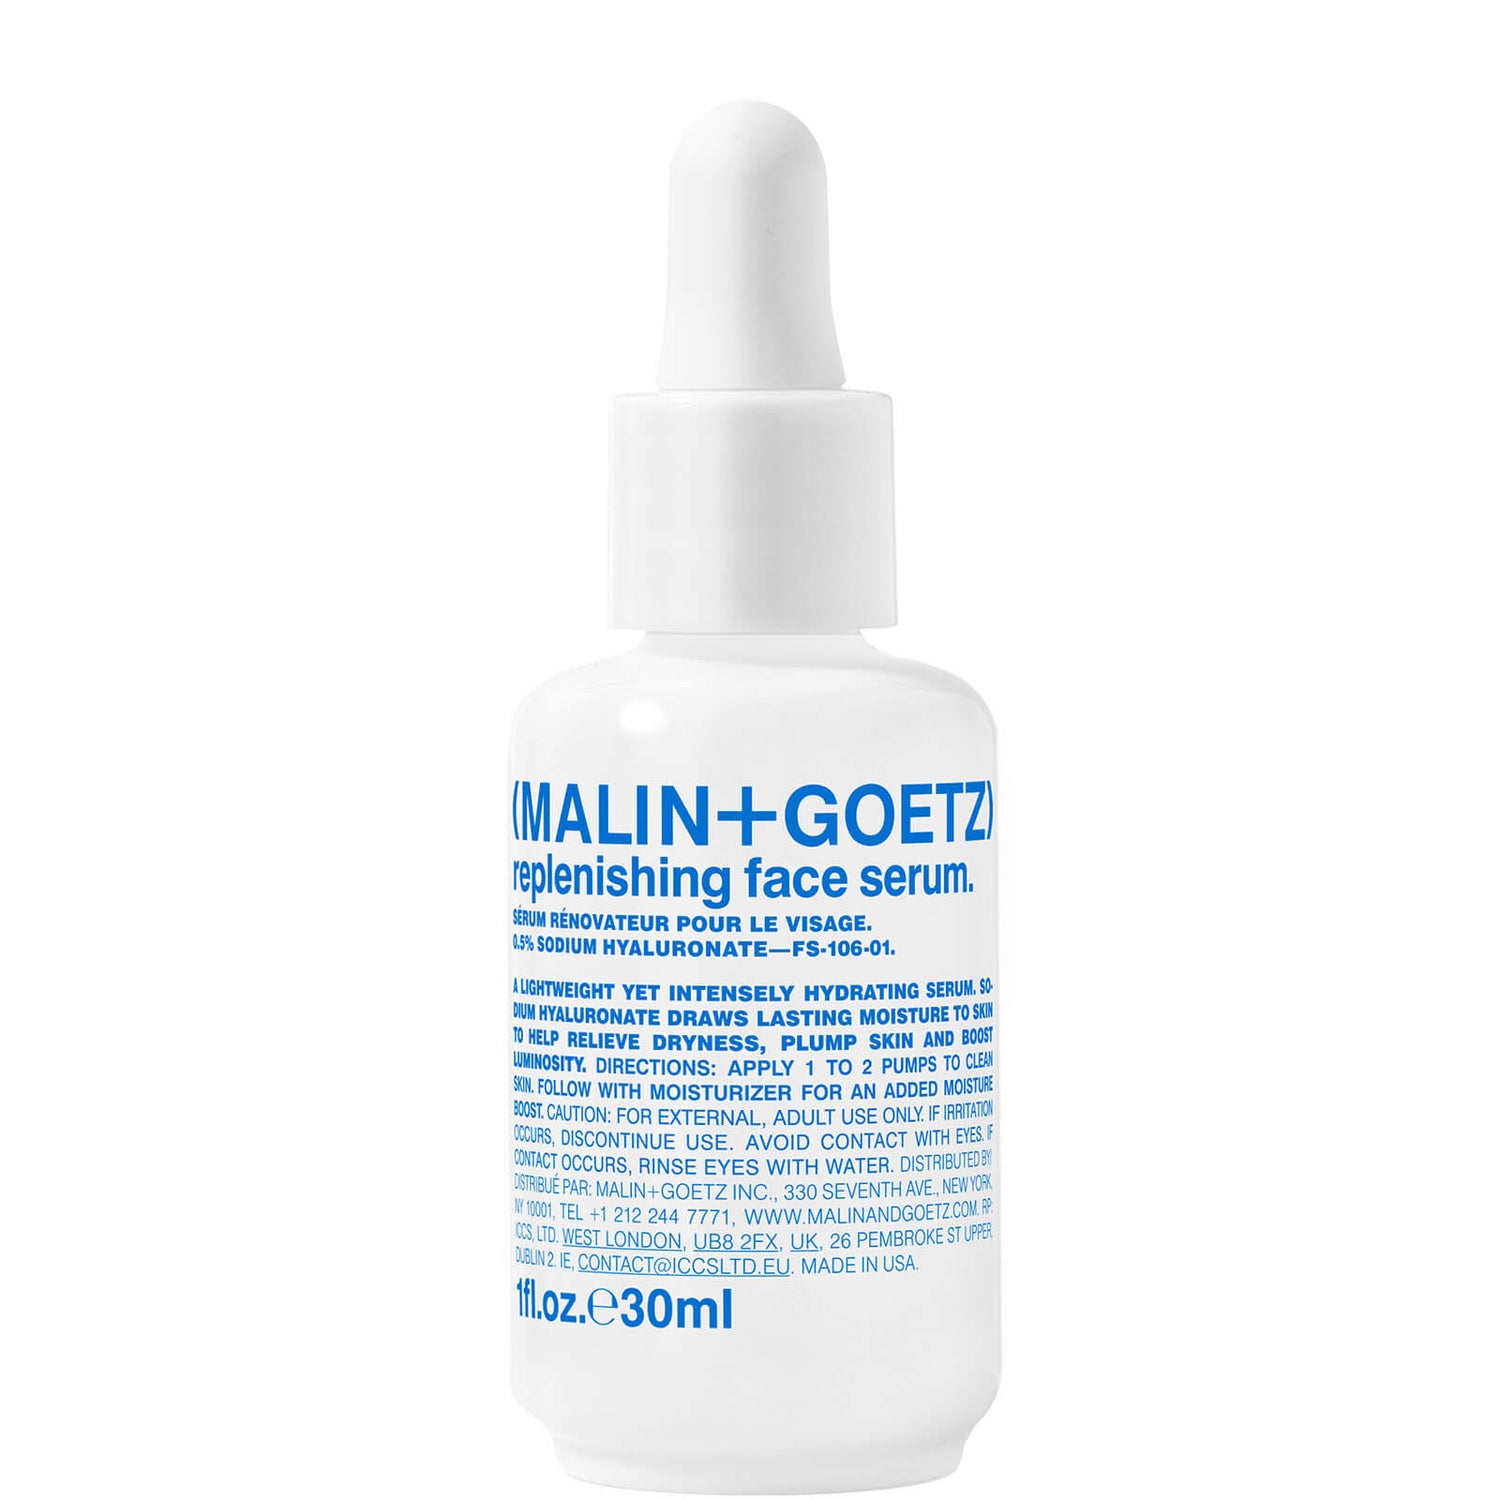 Malin + Goetz Replenishing Face Serum 30ml